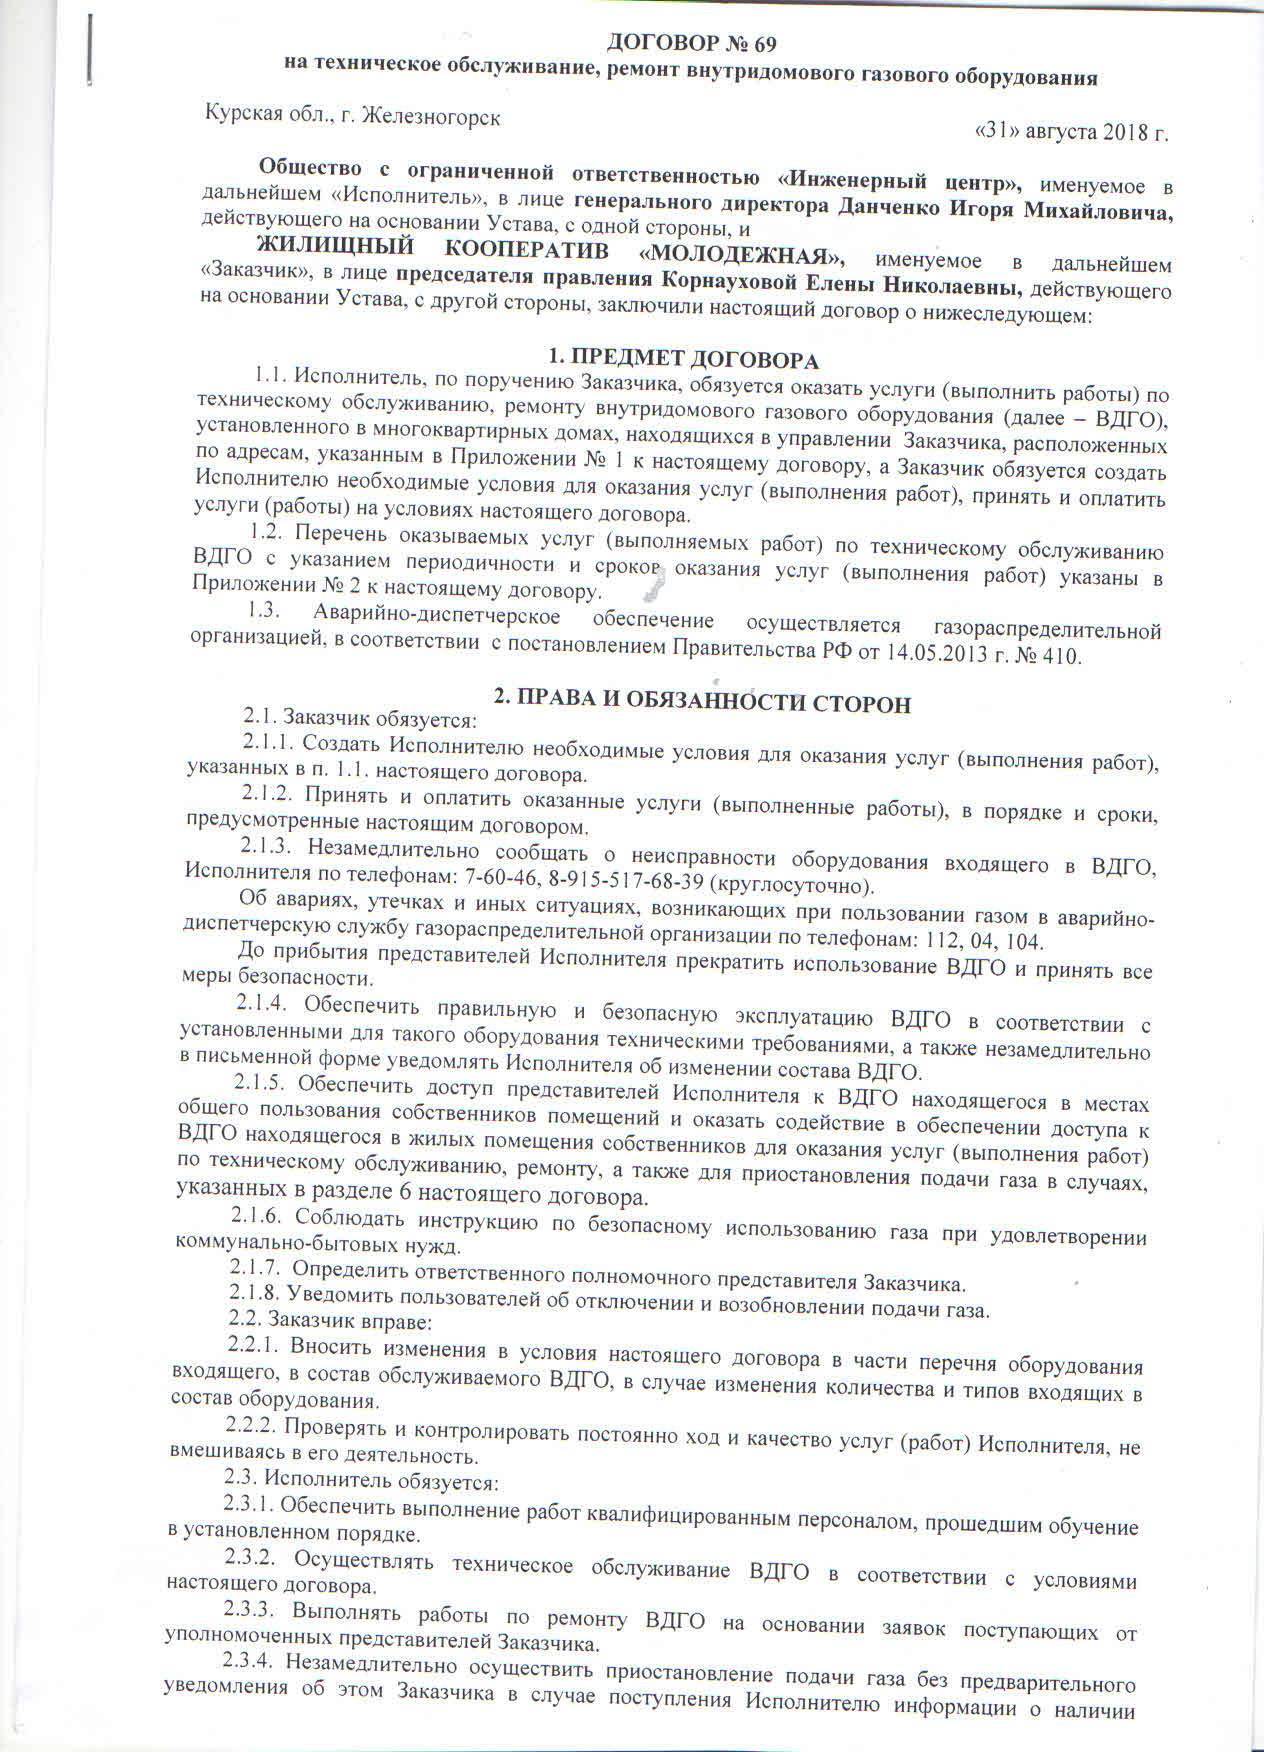 Обязательно ли заключение договора с газовой службой на обслуживание? :: businessman.ru